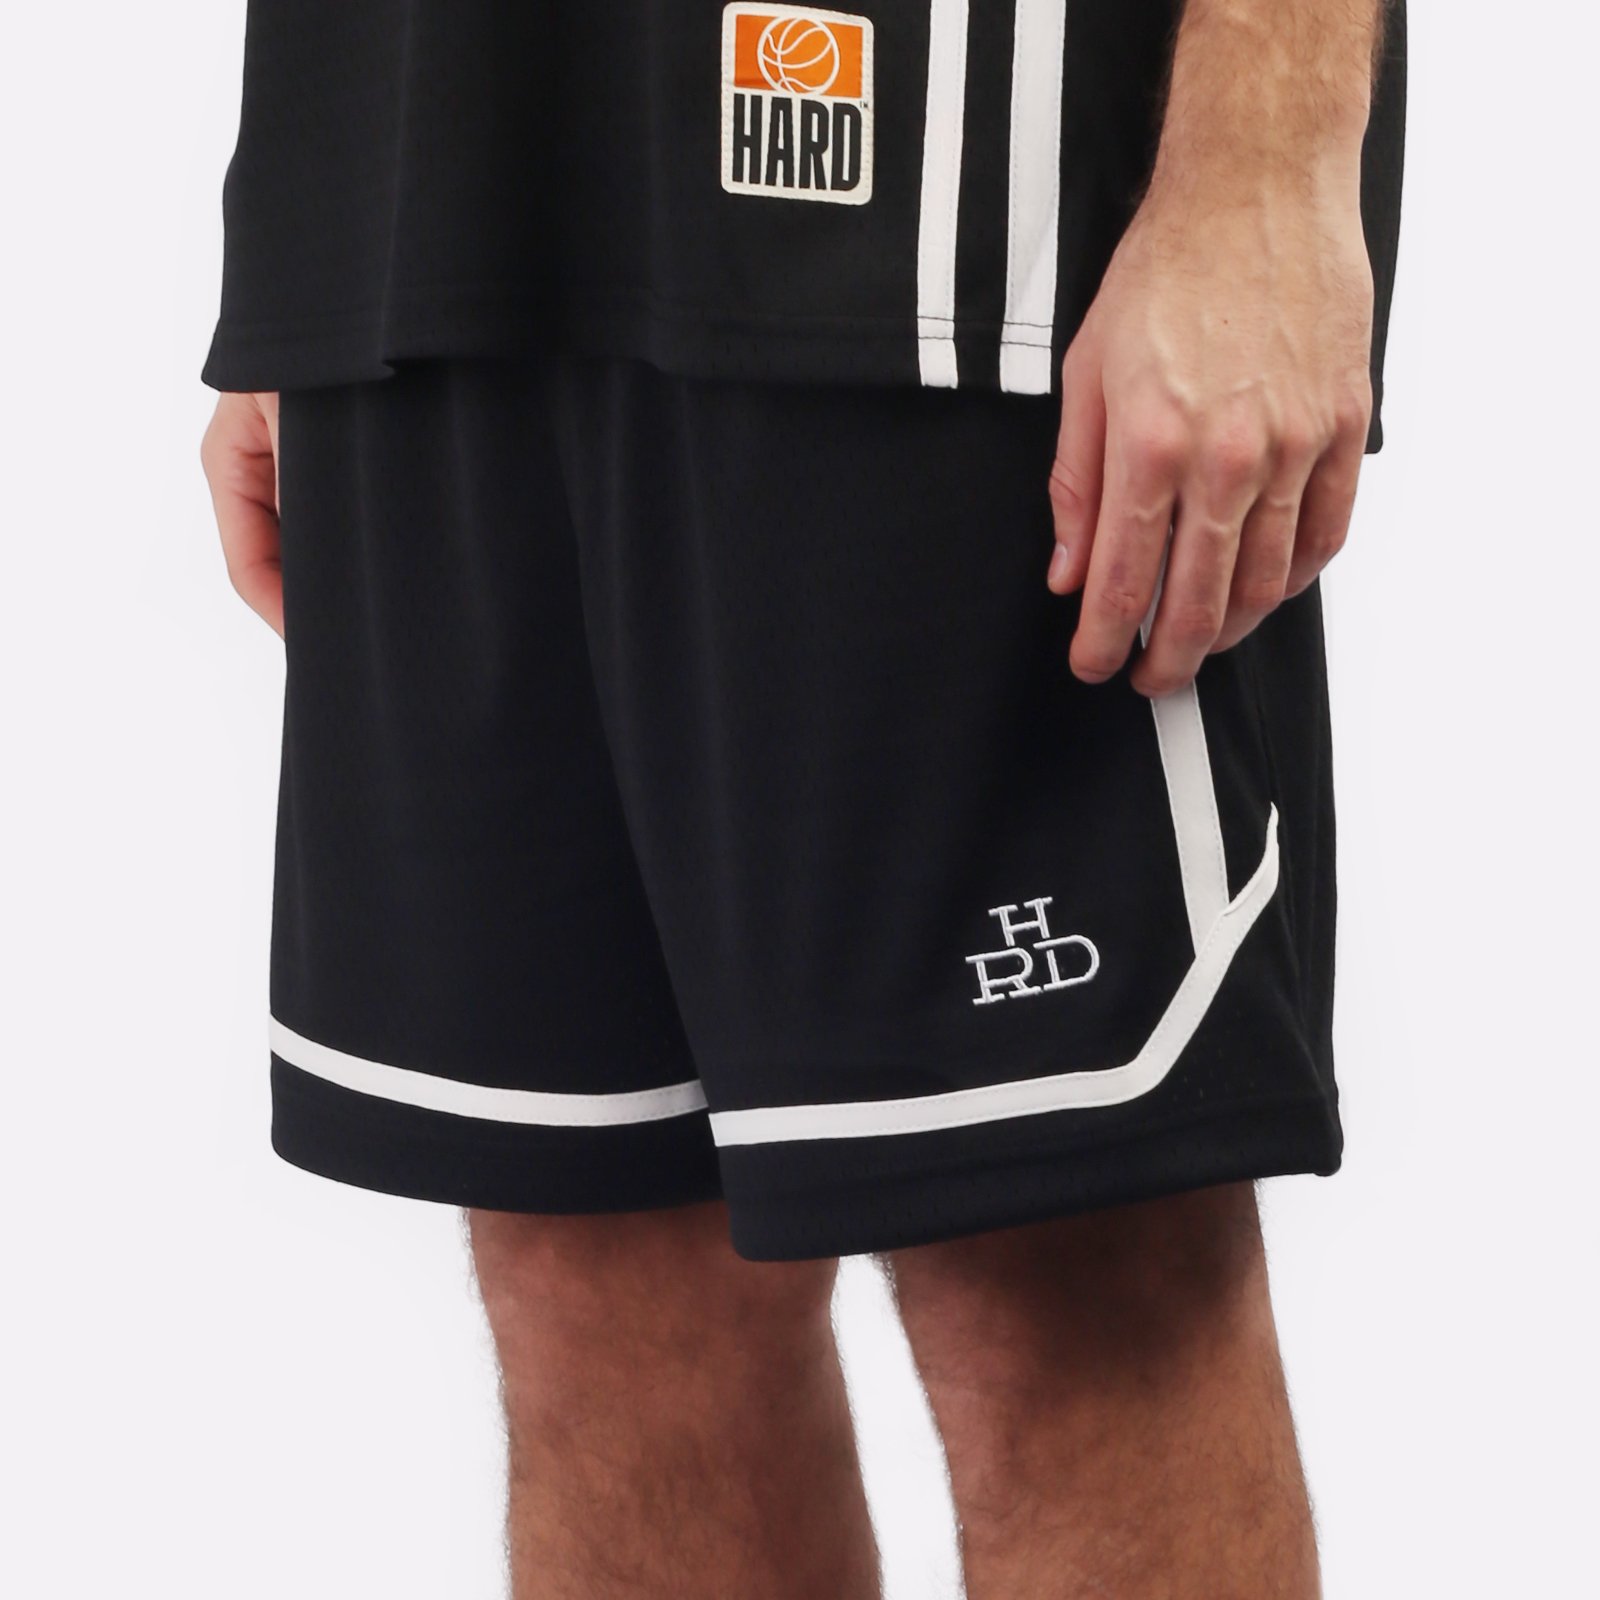 мужские черные шорты Hard Teammate Teammate short-blk/wht - цена, описание, фото 4